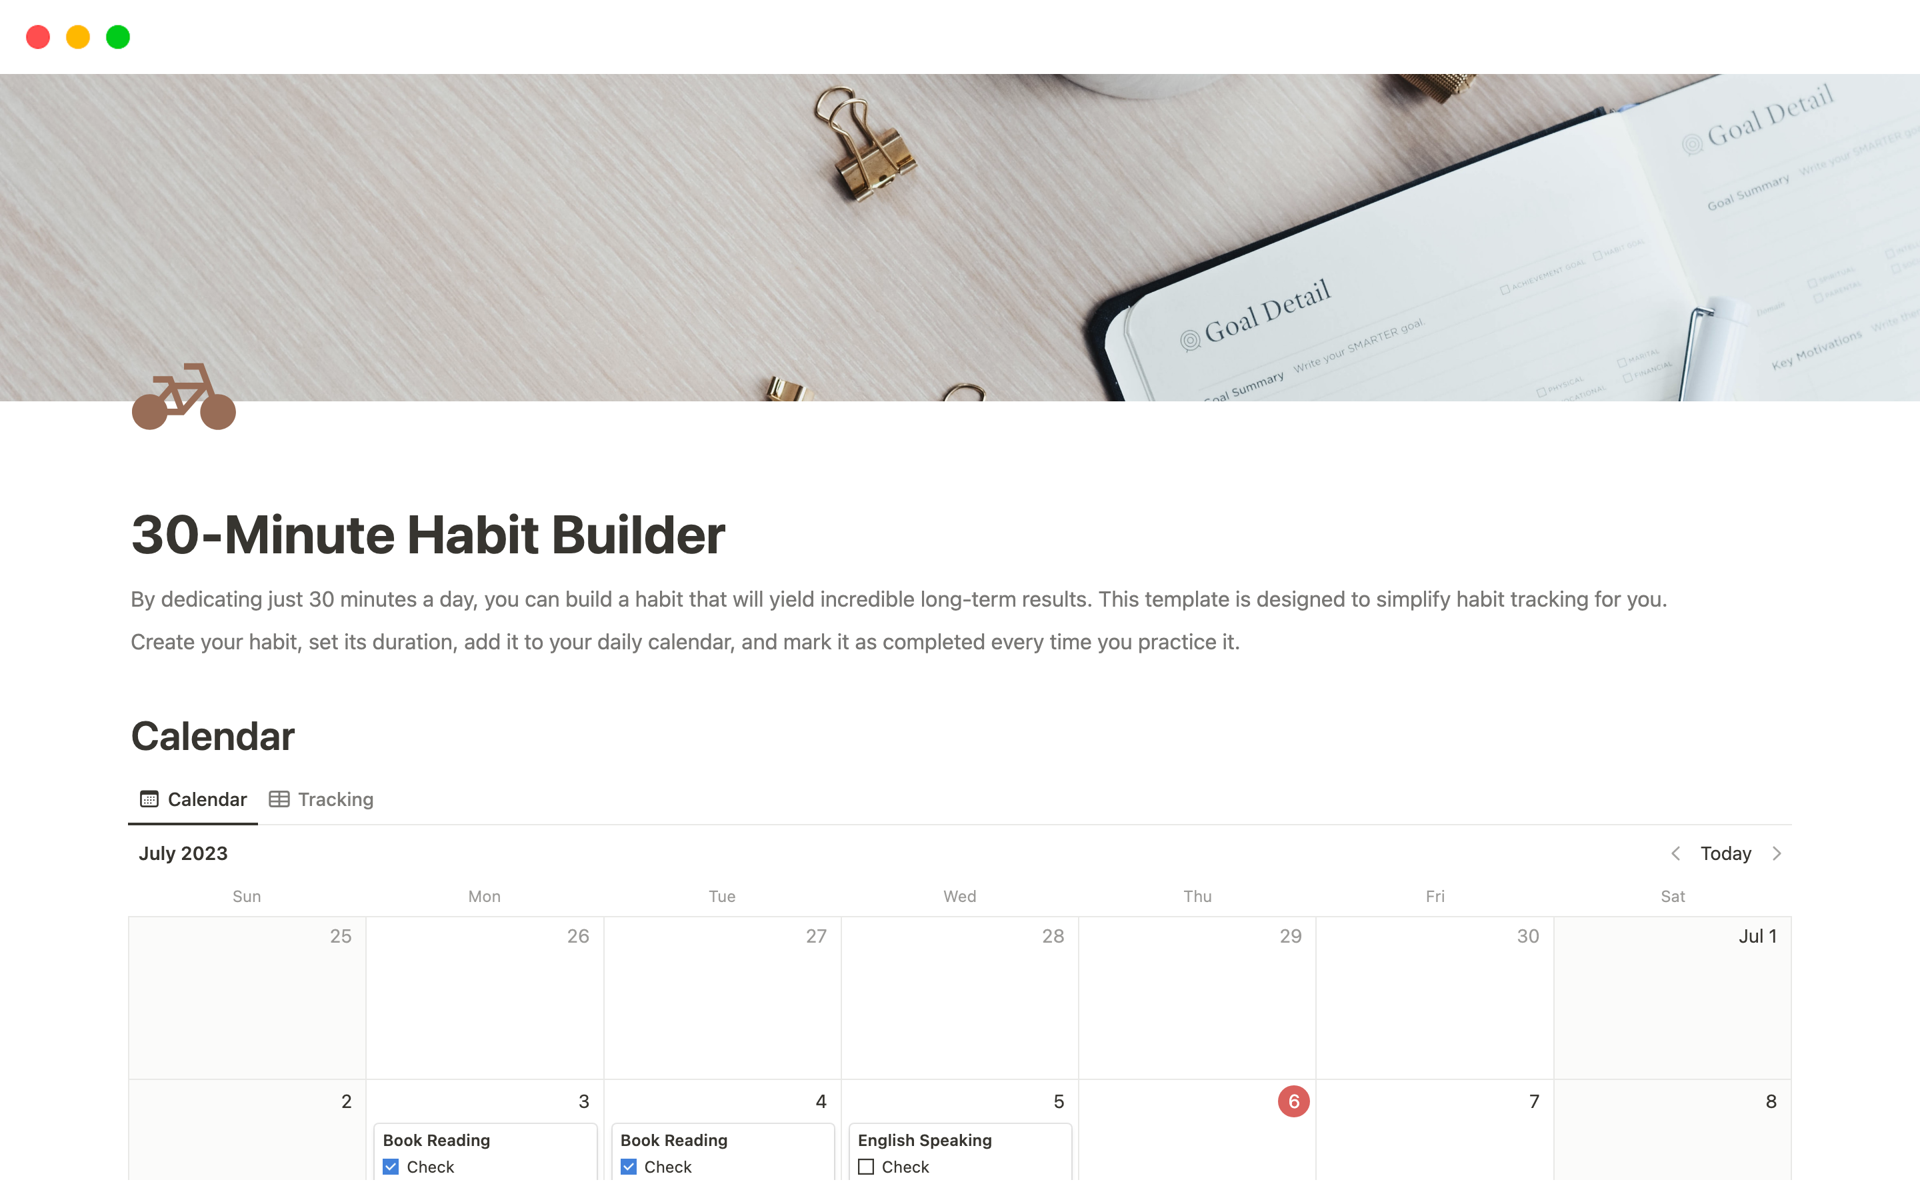 En förhandsgranskning av mallen för 30-Minute Habit Builder